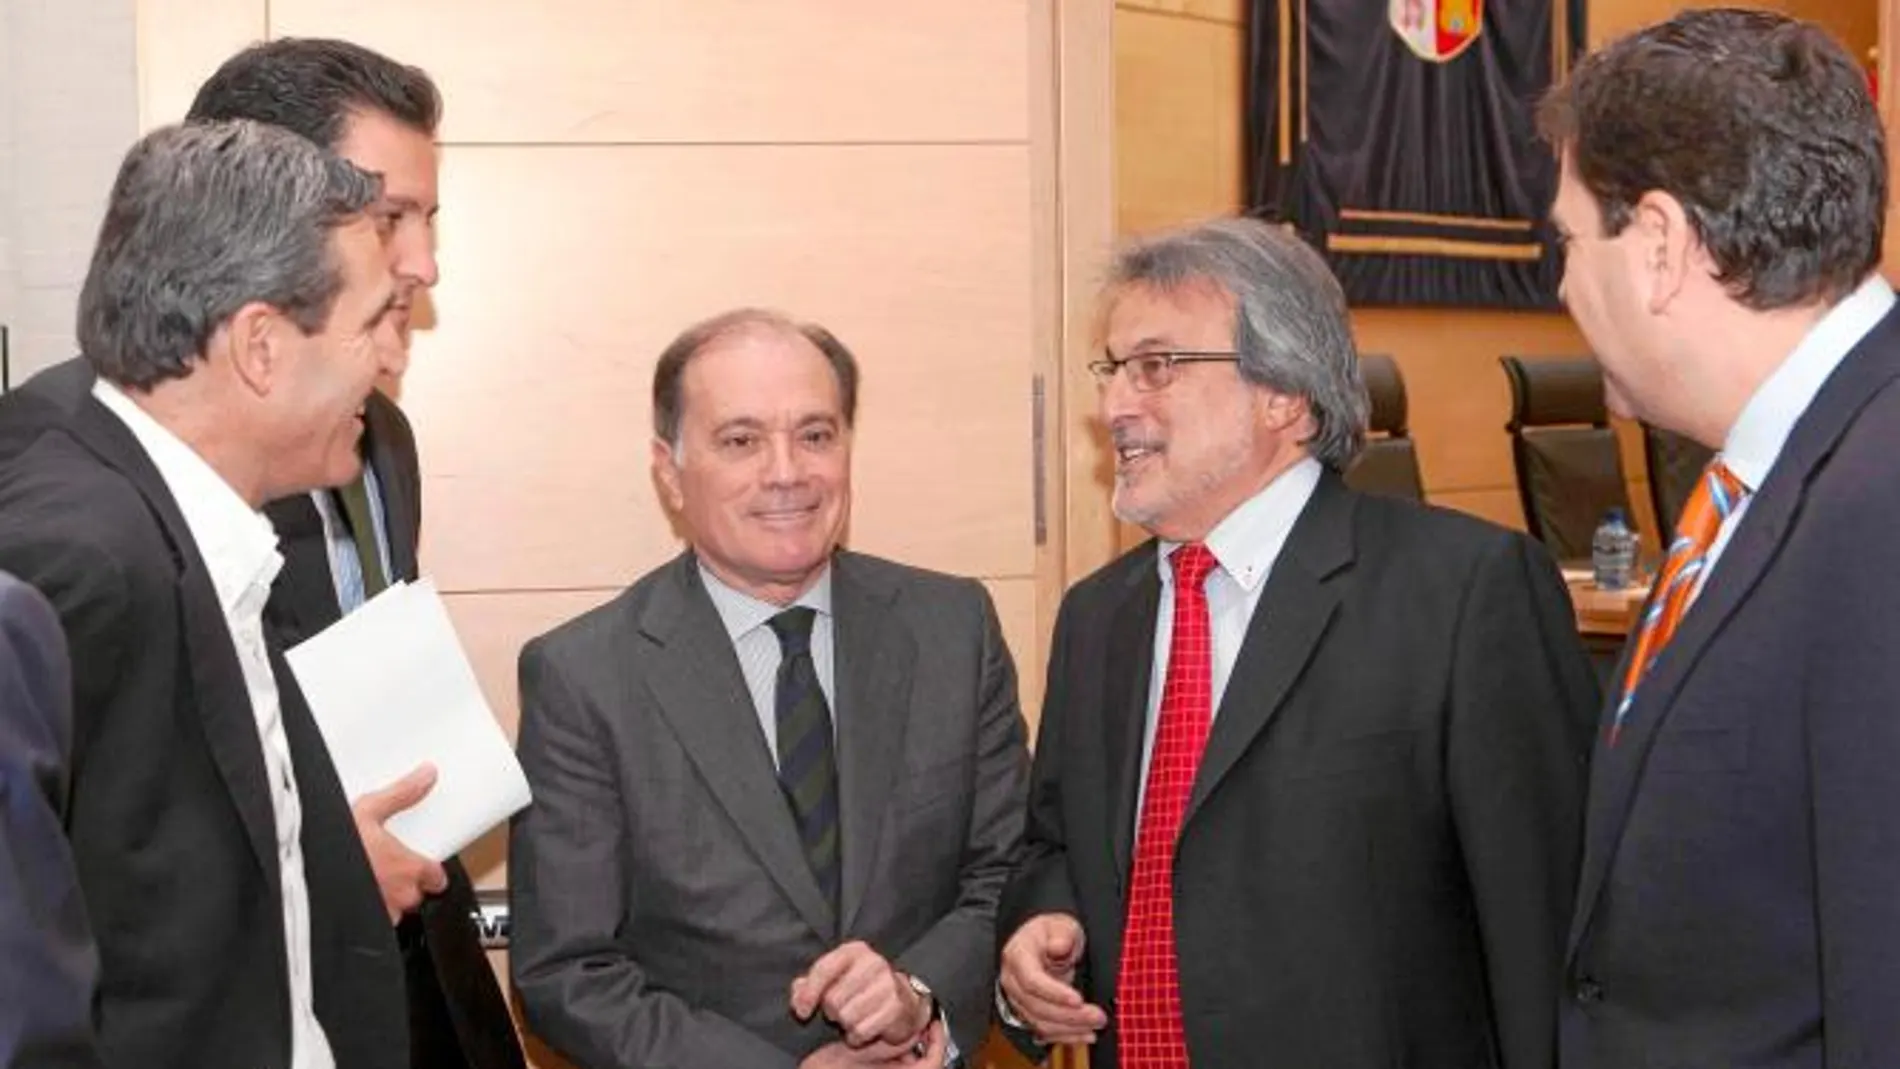 Villanueva momentos antes de iniciar su intervención dialoga con Carriedo, Sanz Vitorio, José María González y Raúl de la Hoz